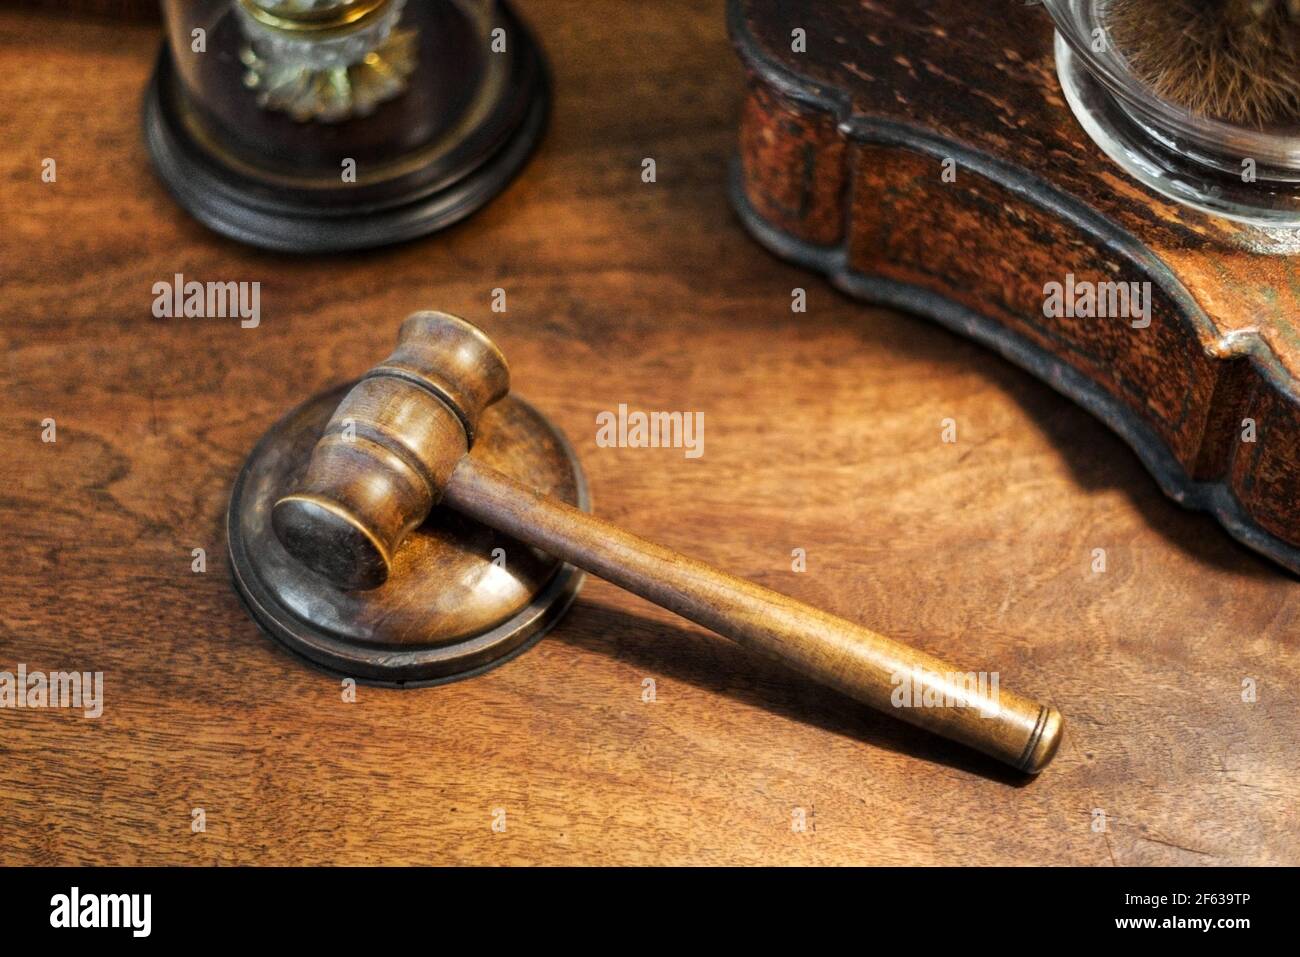 Kleine hölzerne Richter gavel auf einem Schreibtisch in einem hohen Winkel Ansicht Konzept von Verbrechen, Recht und Ordnung, Verurteilung, Gericht oder eine Auktion Stockfoto